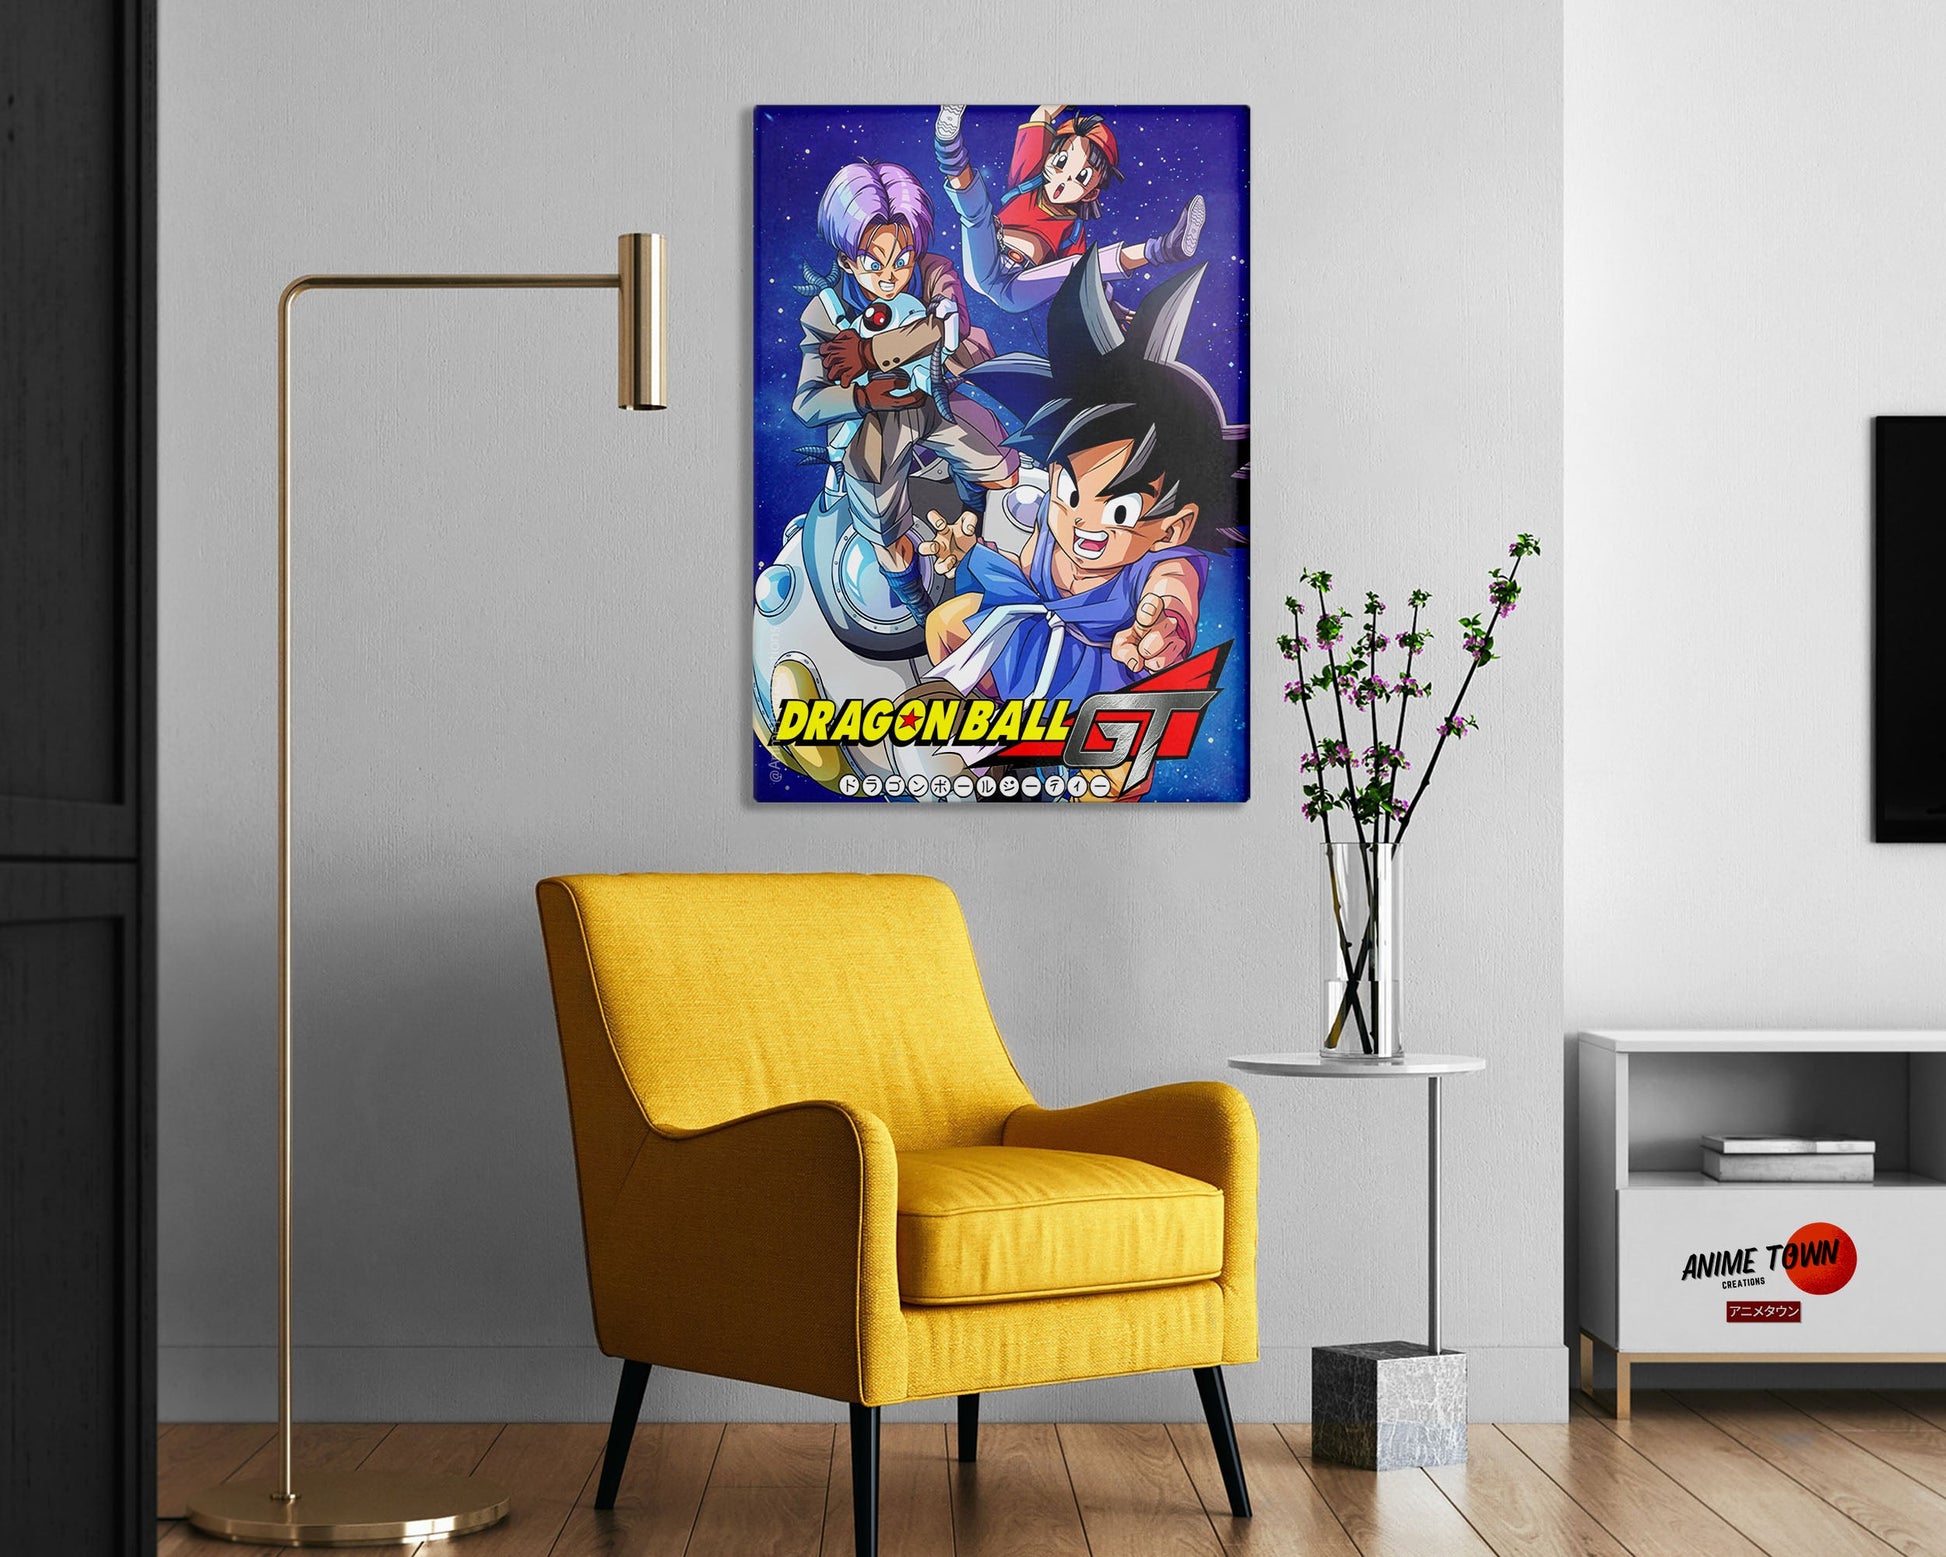 Anime Town Creations Metal Poster Dragon Ball GT 16" x 24" Home Goods - Anime Dragon Ball Metal Poster